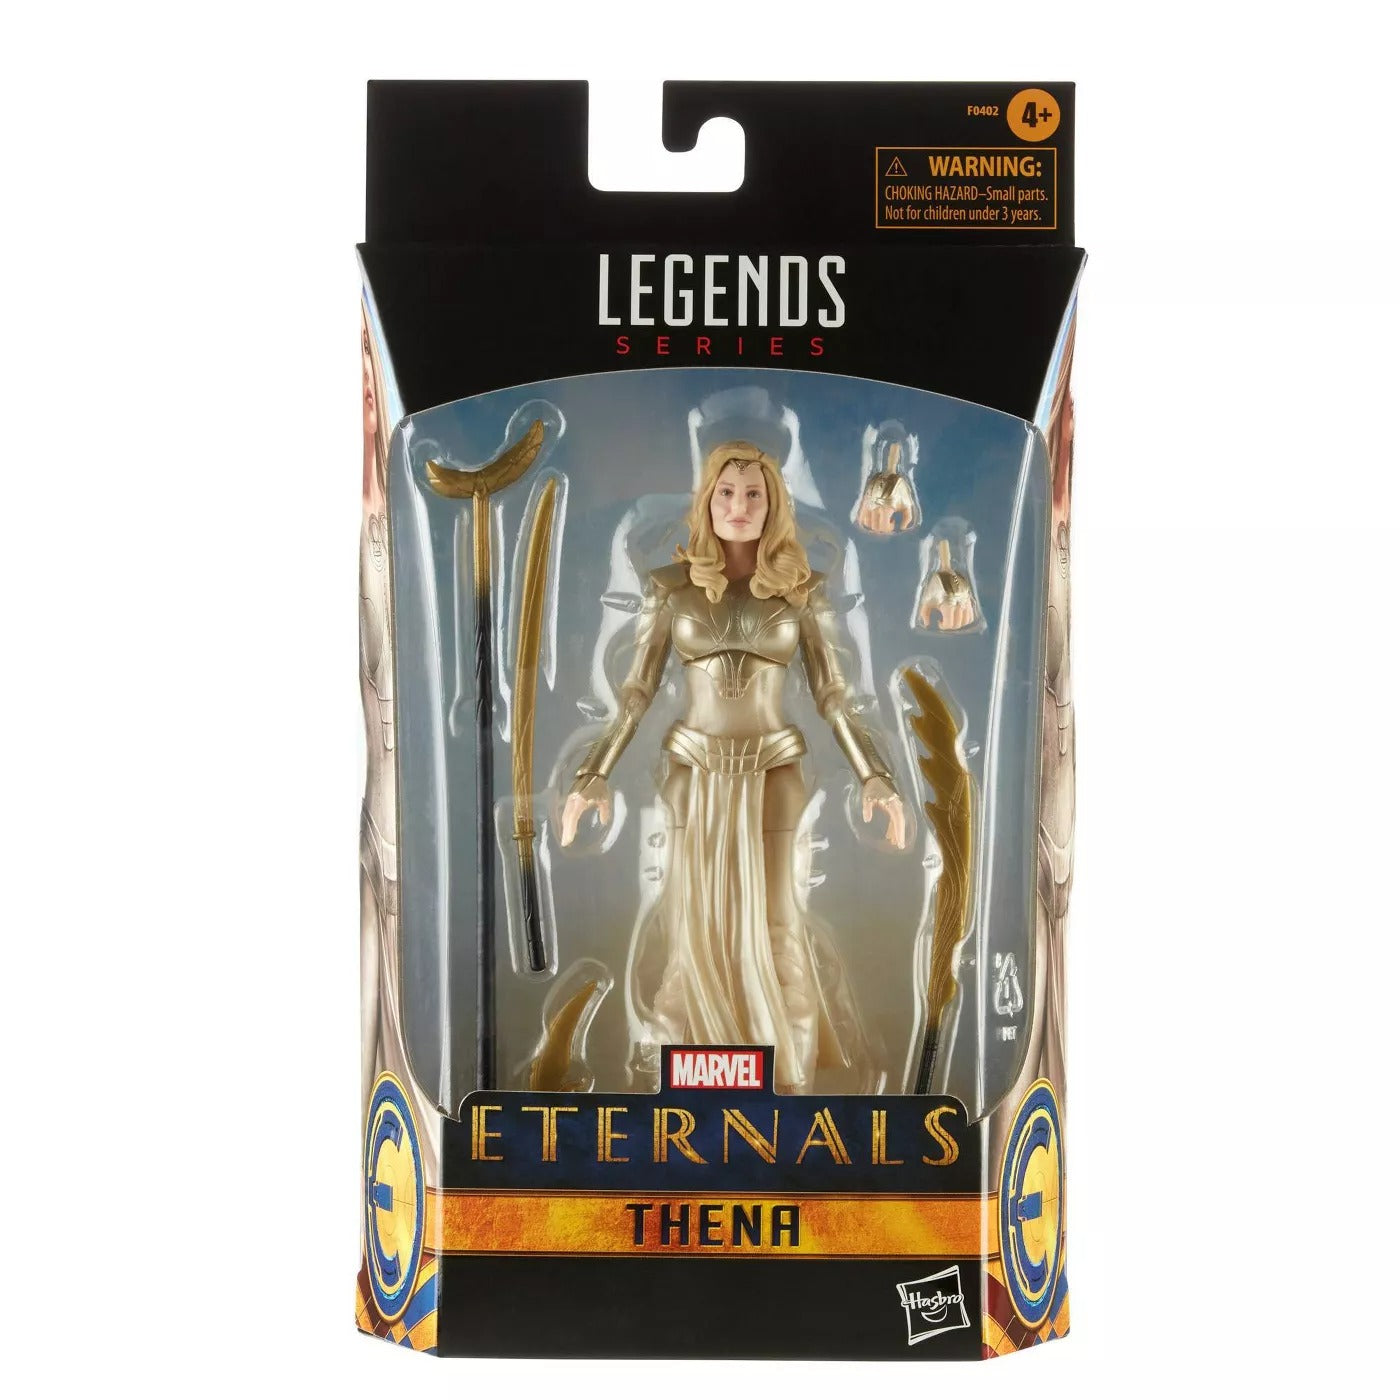 Marvel Legends Eternals Wave Thena Target Exclusive Action Figure